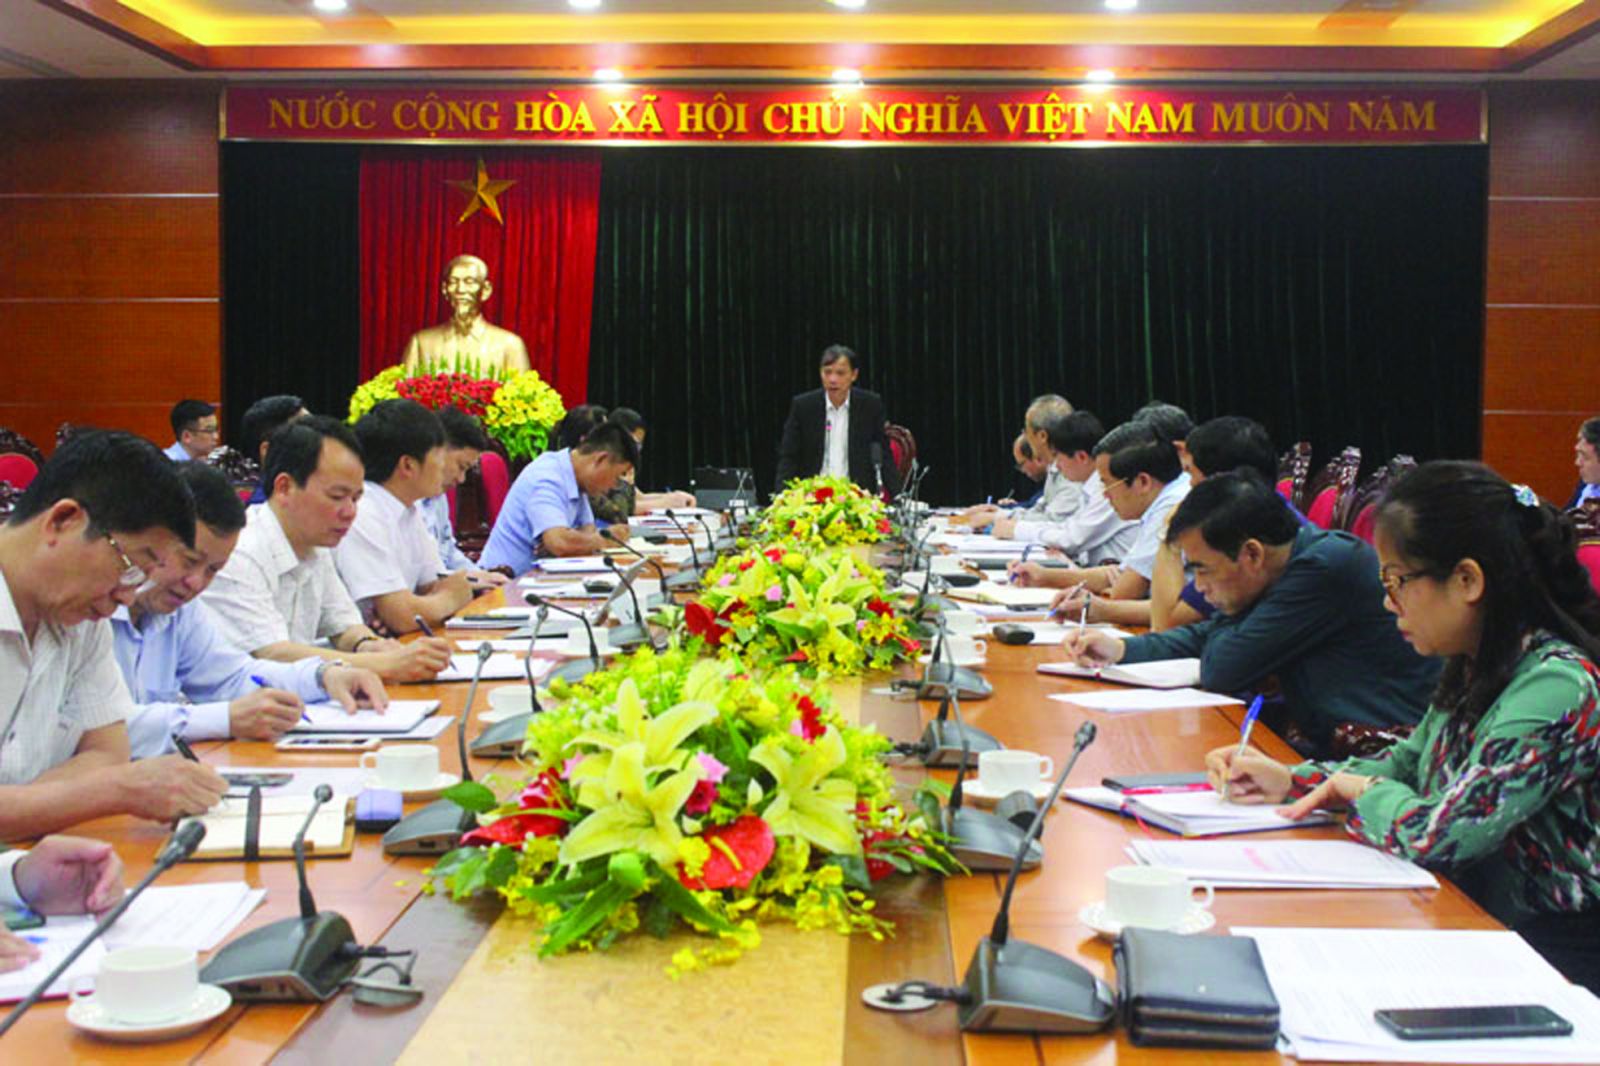  Đồng chí Bùi Văn Khánh, Phó Bí thư tỉnh uỷ, Chủ tịch UBND tỉnh chỉ đạo tại cuộc họp.